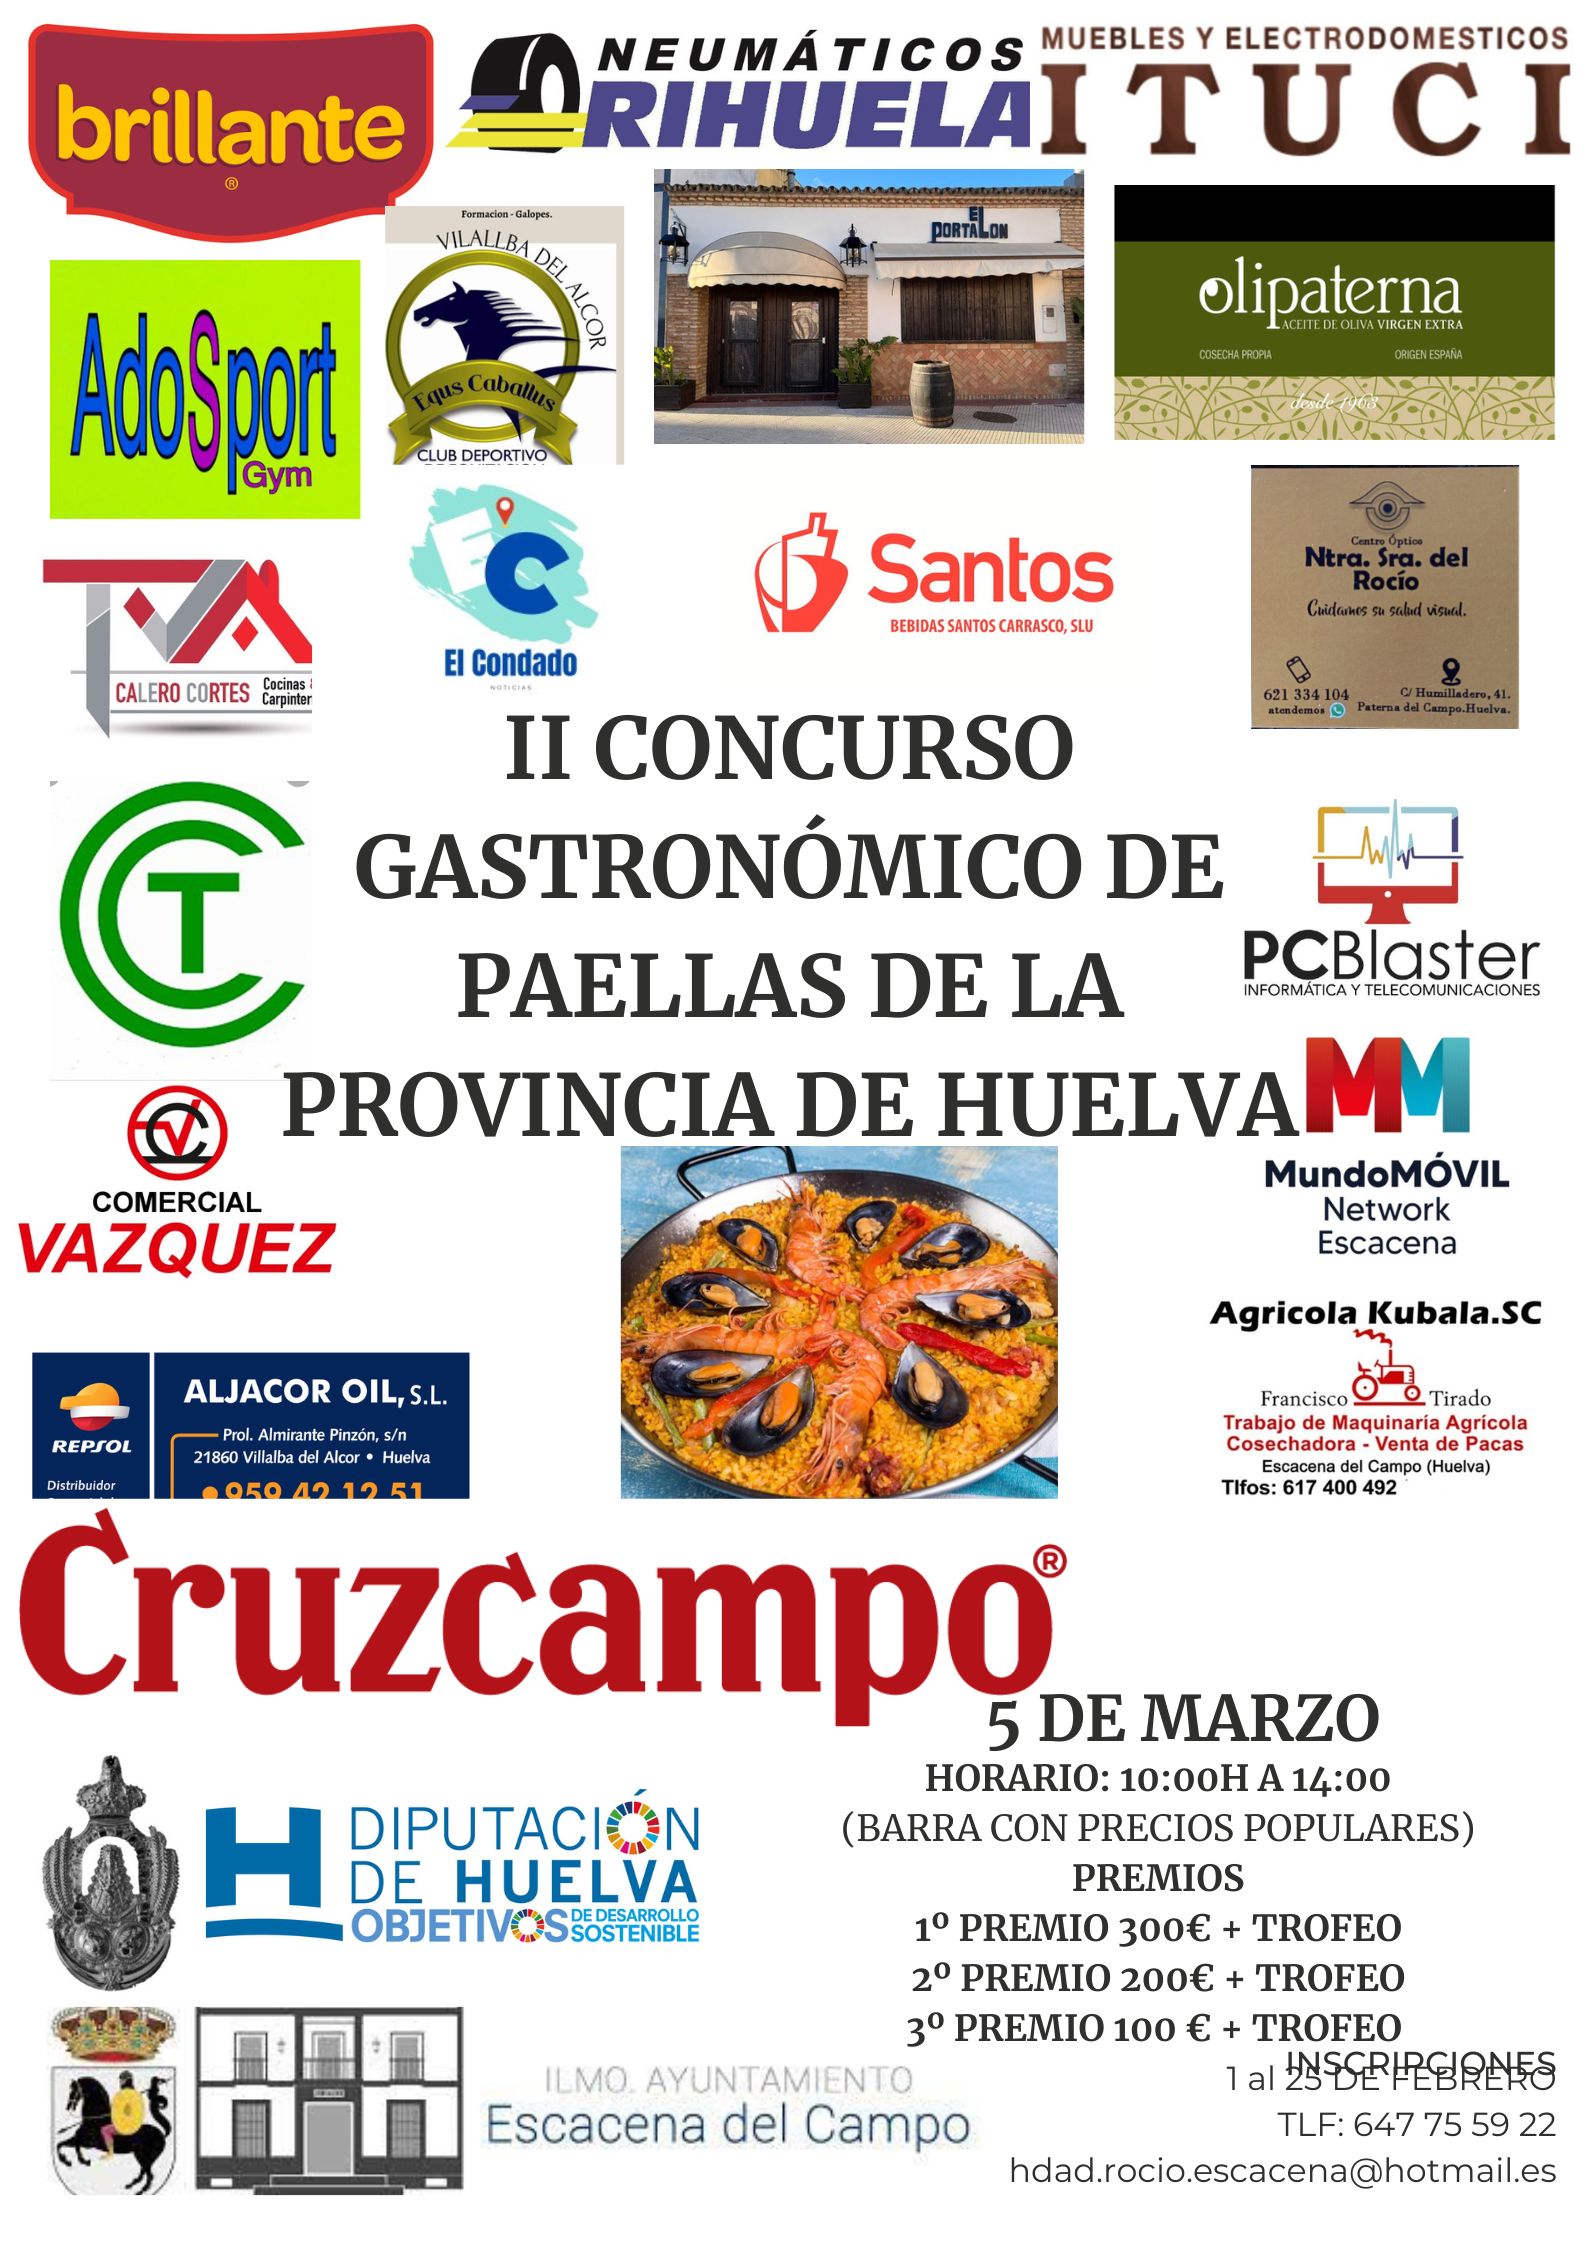 II Concurso Gastronómico de Paellas de la provincia de Huelva